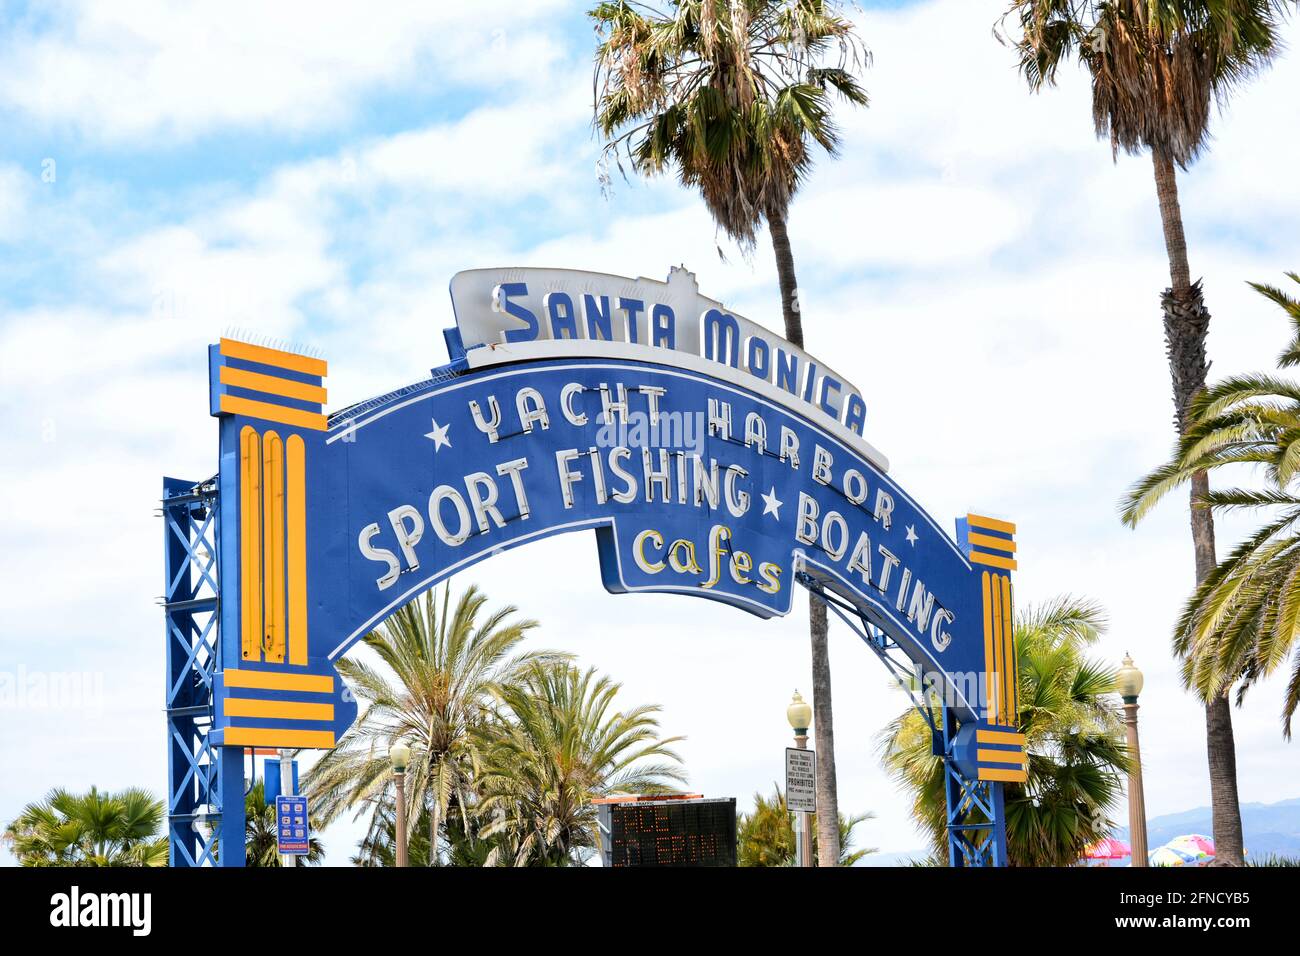 SANTA MONICA, CALIFORNIE - 15 MAI 2021 : panneau à l'entrée de la jetée de Santa Monica, une attraction touristique populaire. Banque D'Images